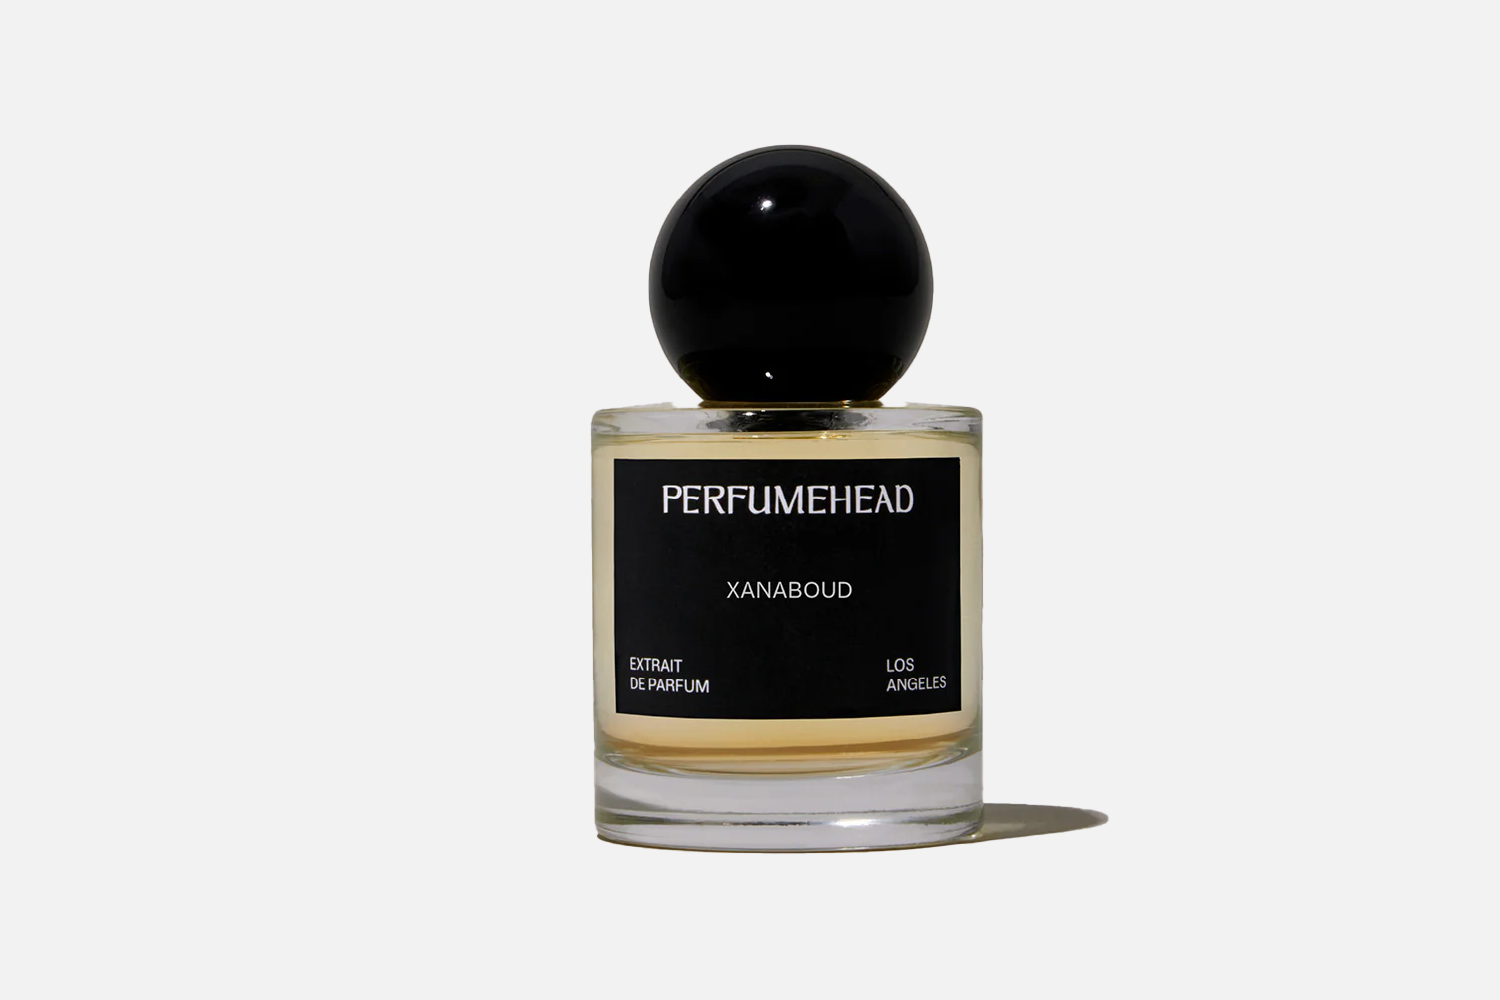 Perfumehead Xanaboud